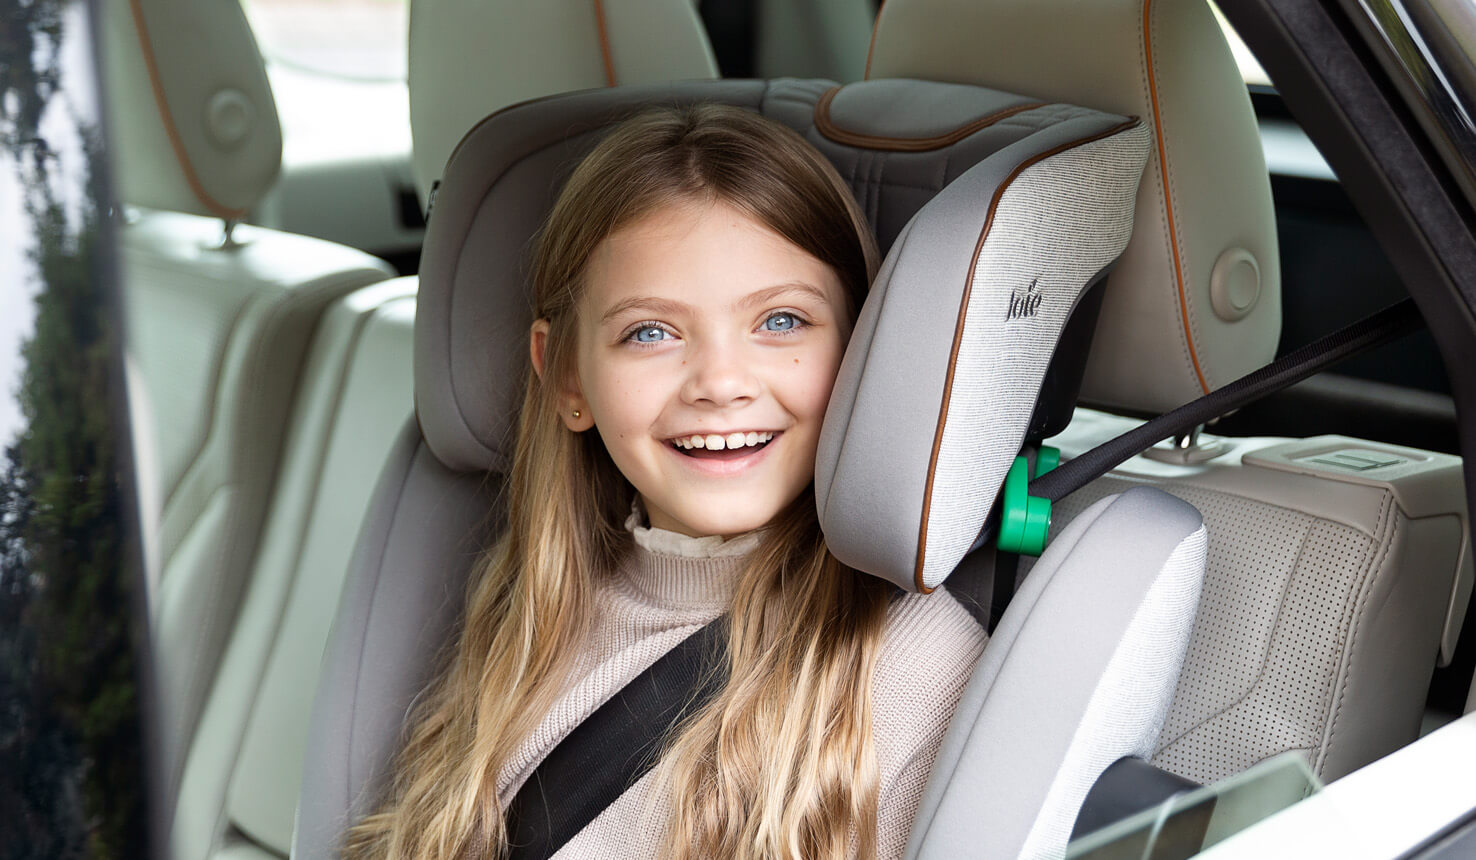 Junges Mädchen lächelt aus dem Autofenster, während es in einem Joie i-Traver Autokindersitz sitzt.